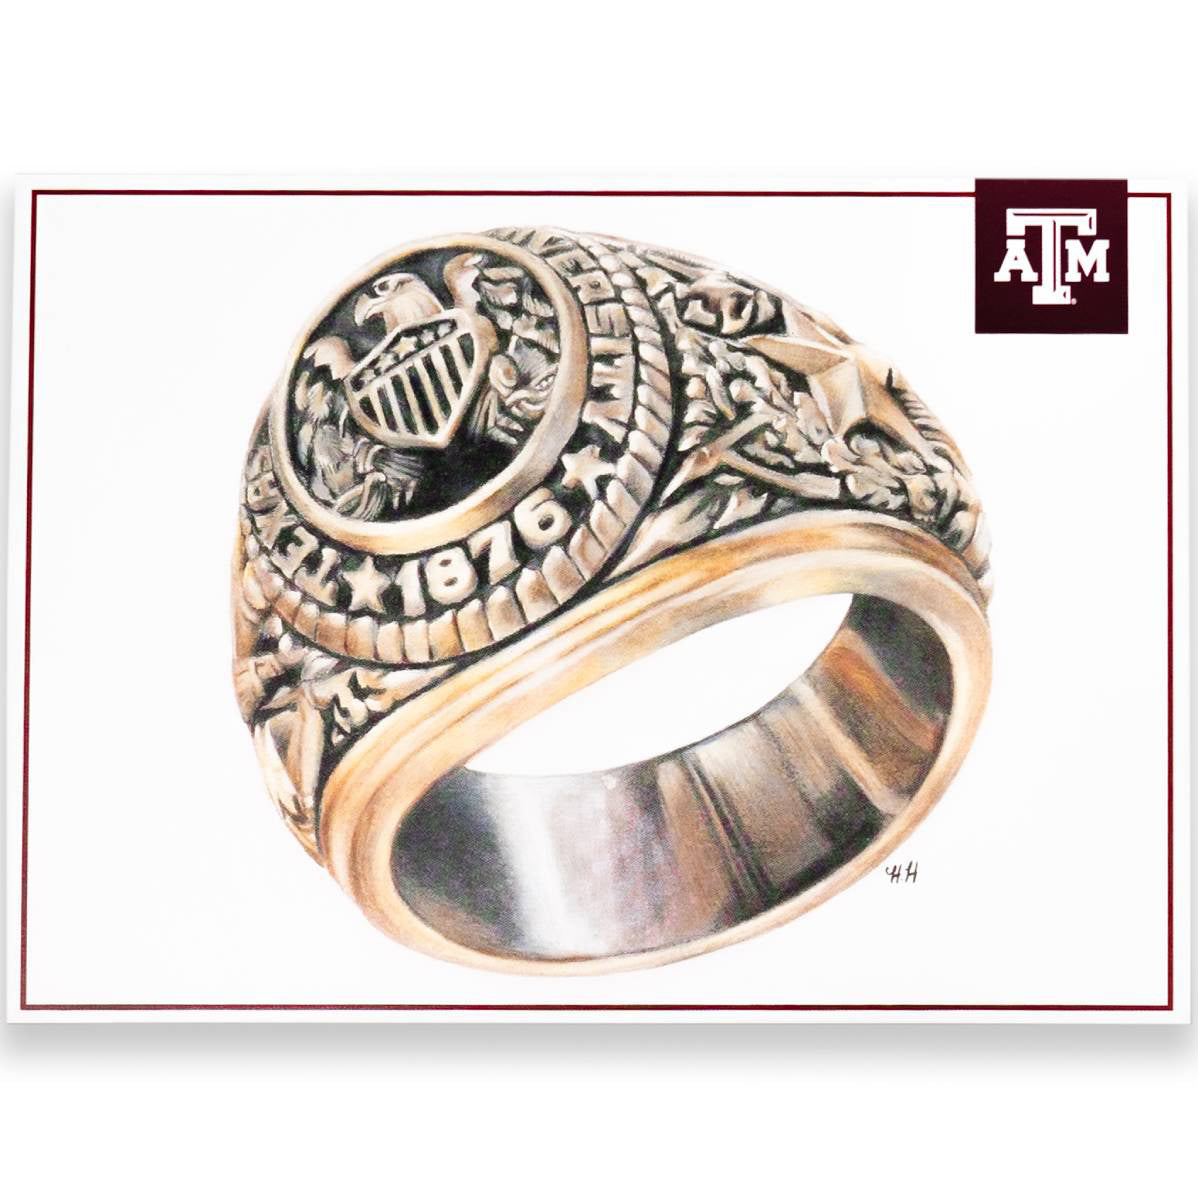 Texas A&M Aggie Ring Postcard